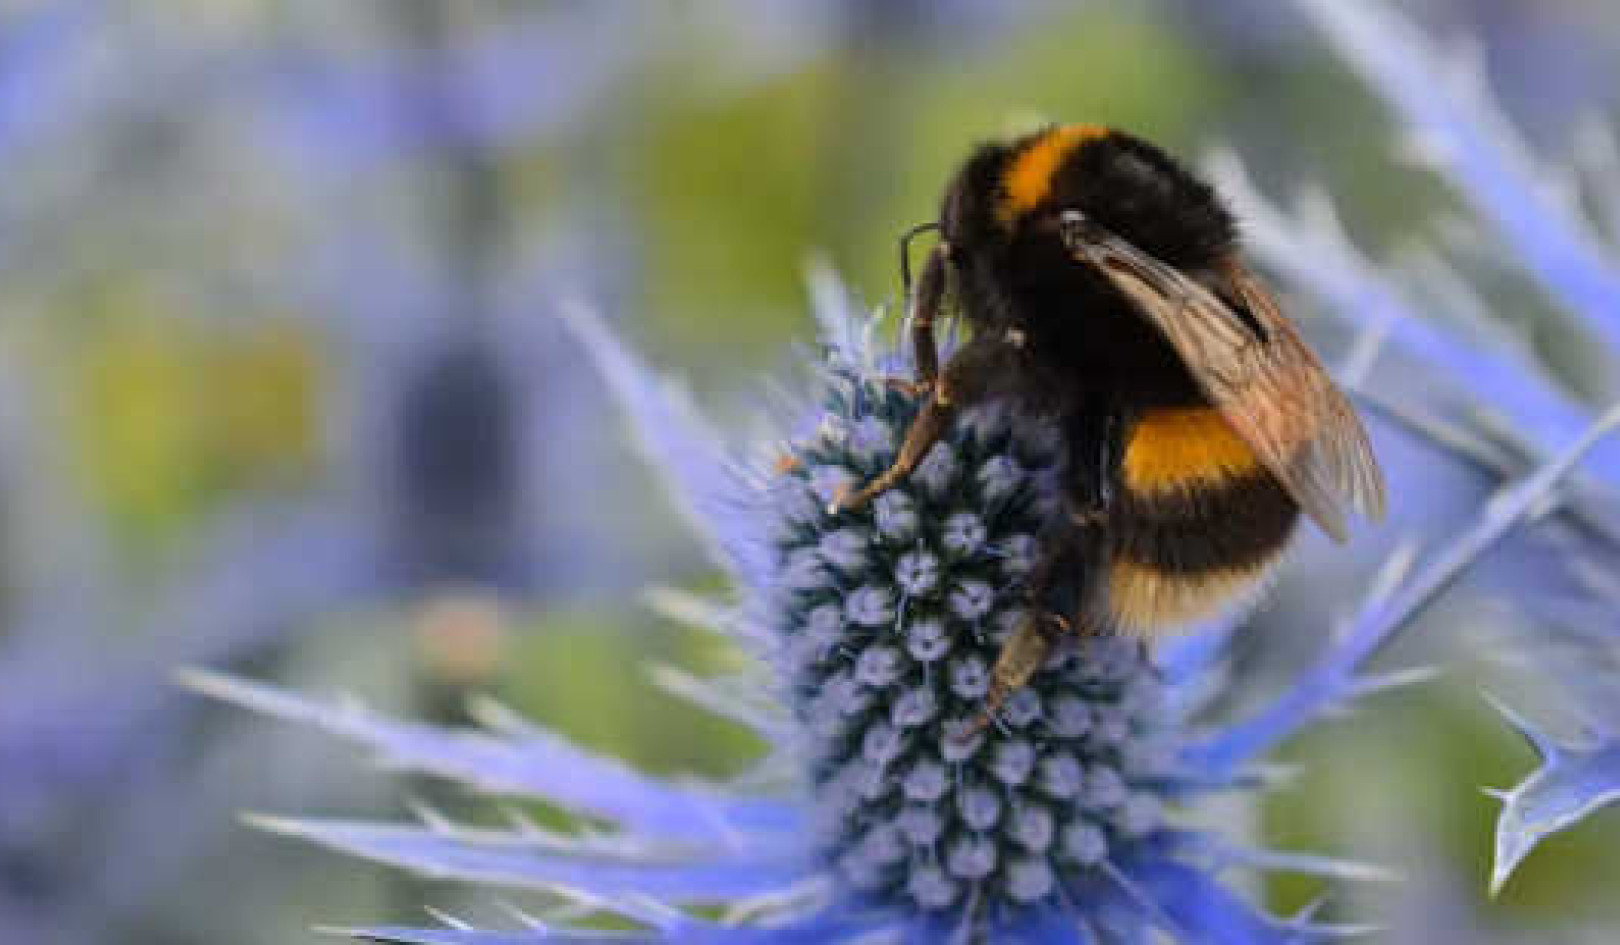 Planter blomstrer en måned tidligere - Her er hva det kan bety for pollinerende insekter